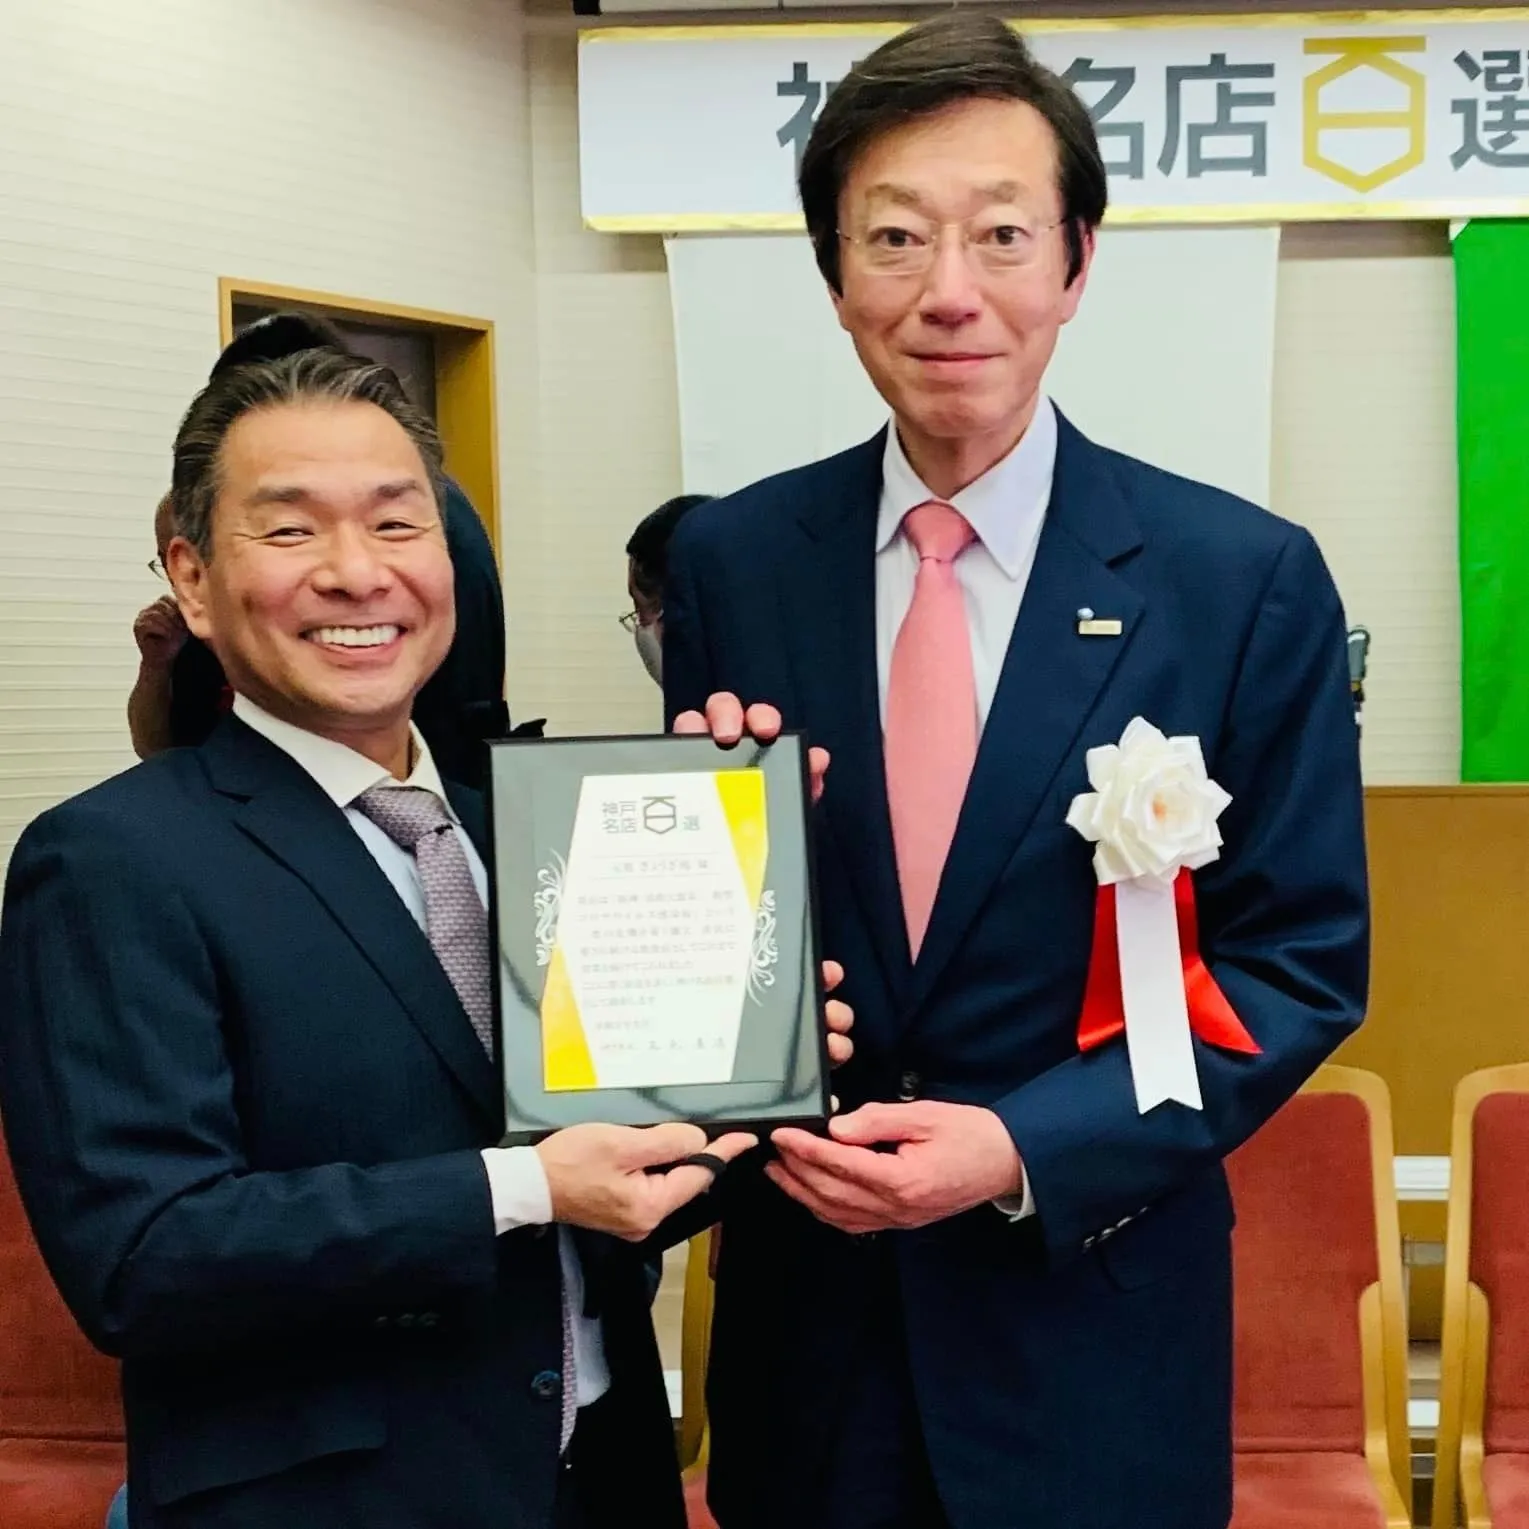 神戸名店百選 神戸市長様より表彰されました